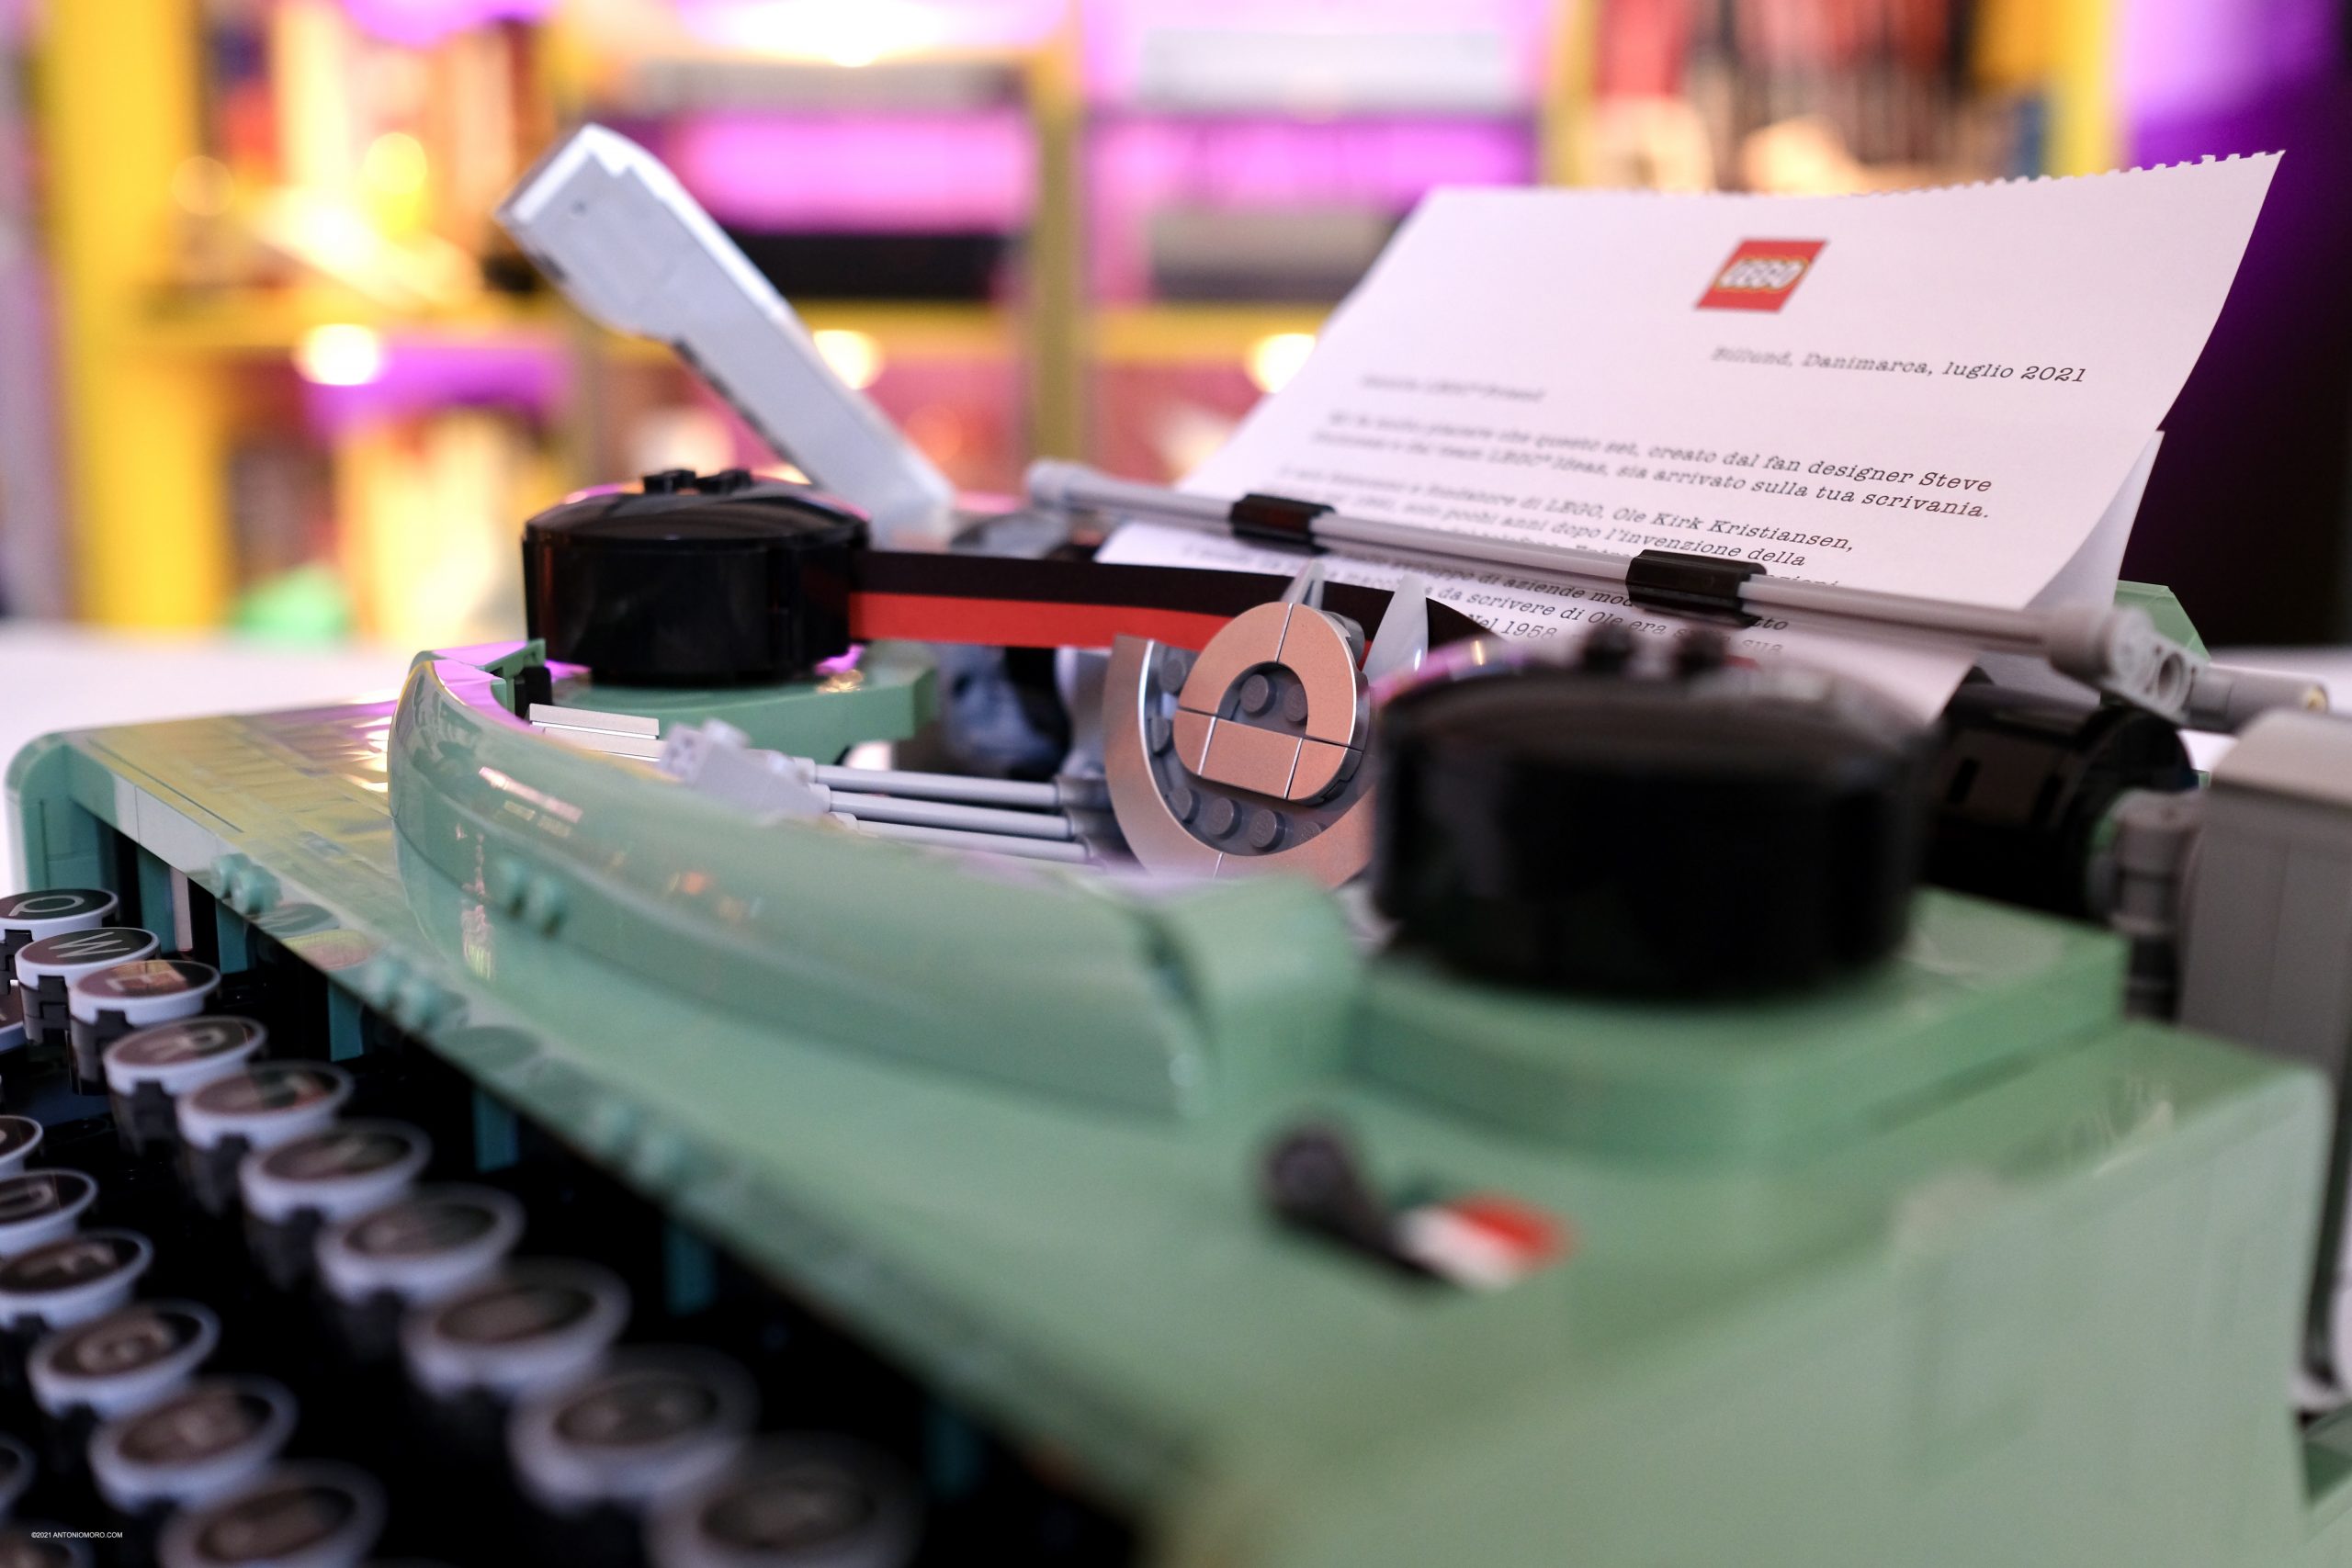 La macchina da scrivere di Lego che funziona davvero!